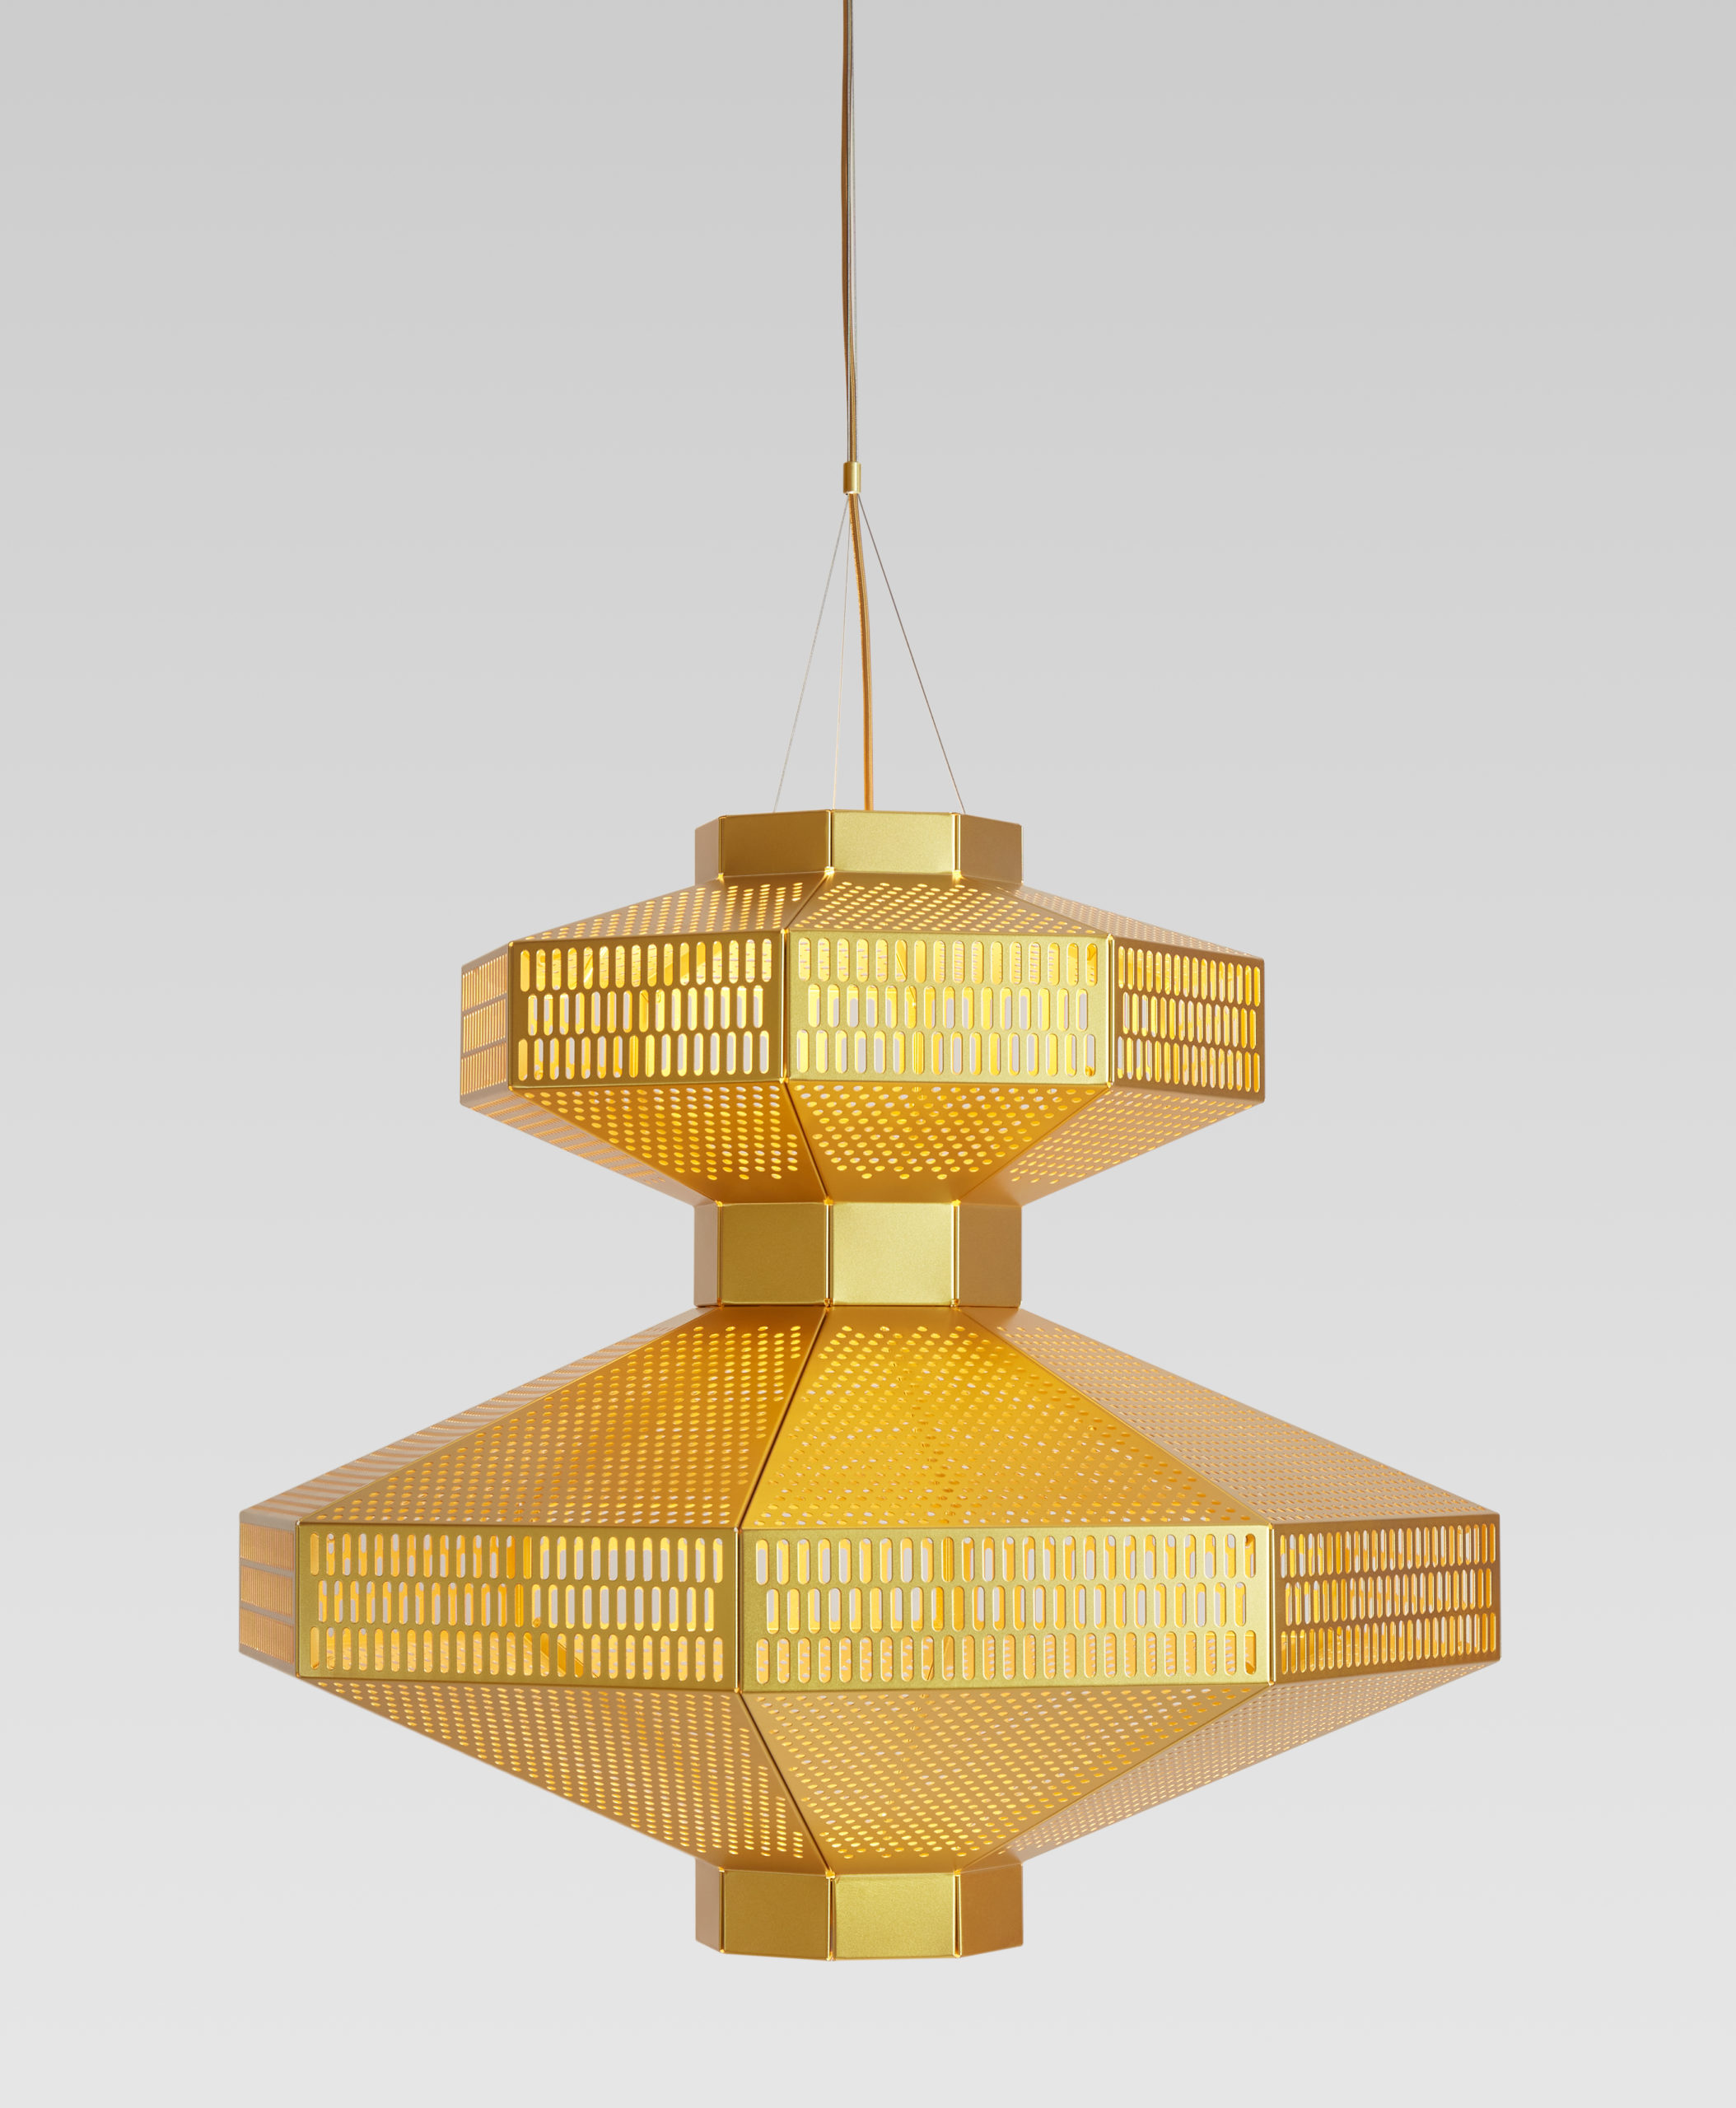 Lampy MA-ROCK zaprojektowane przez Jaime Hayona